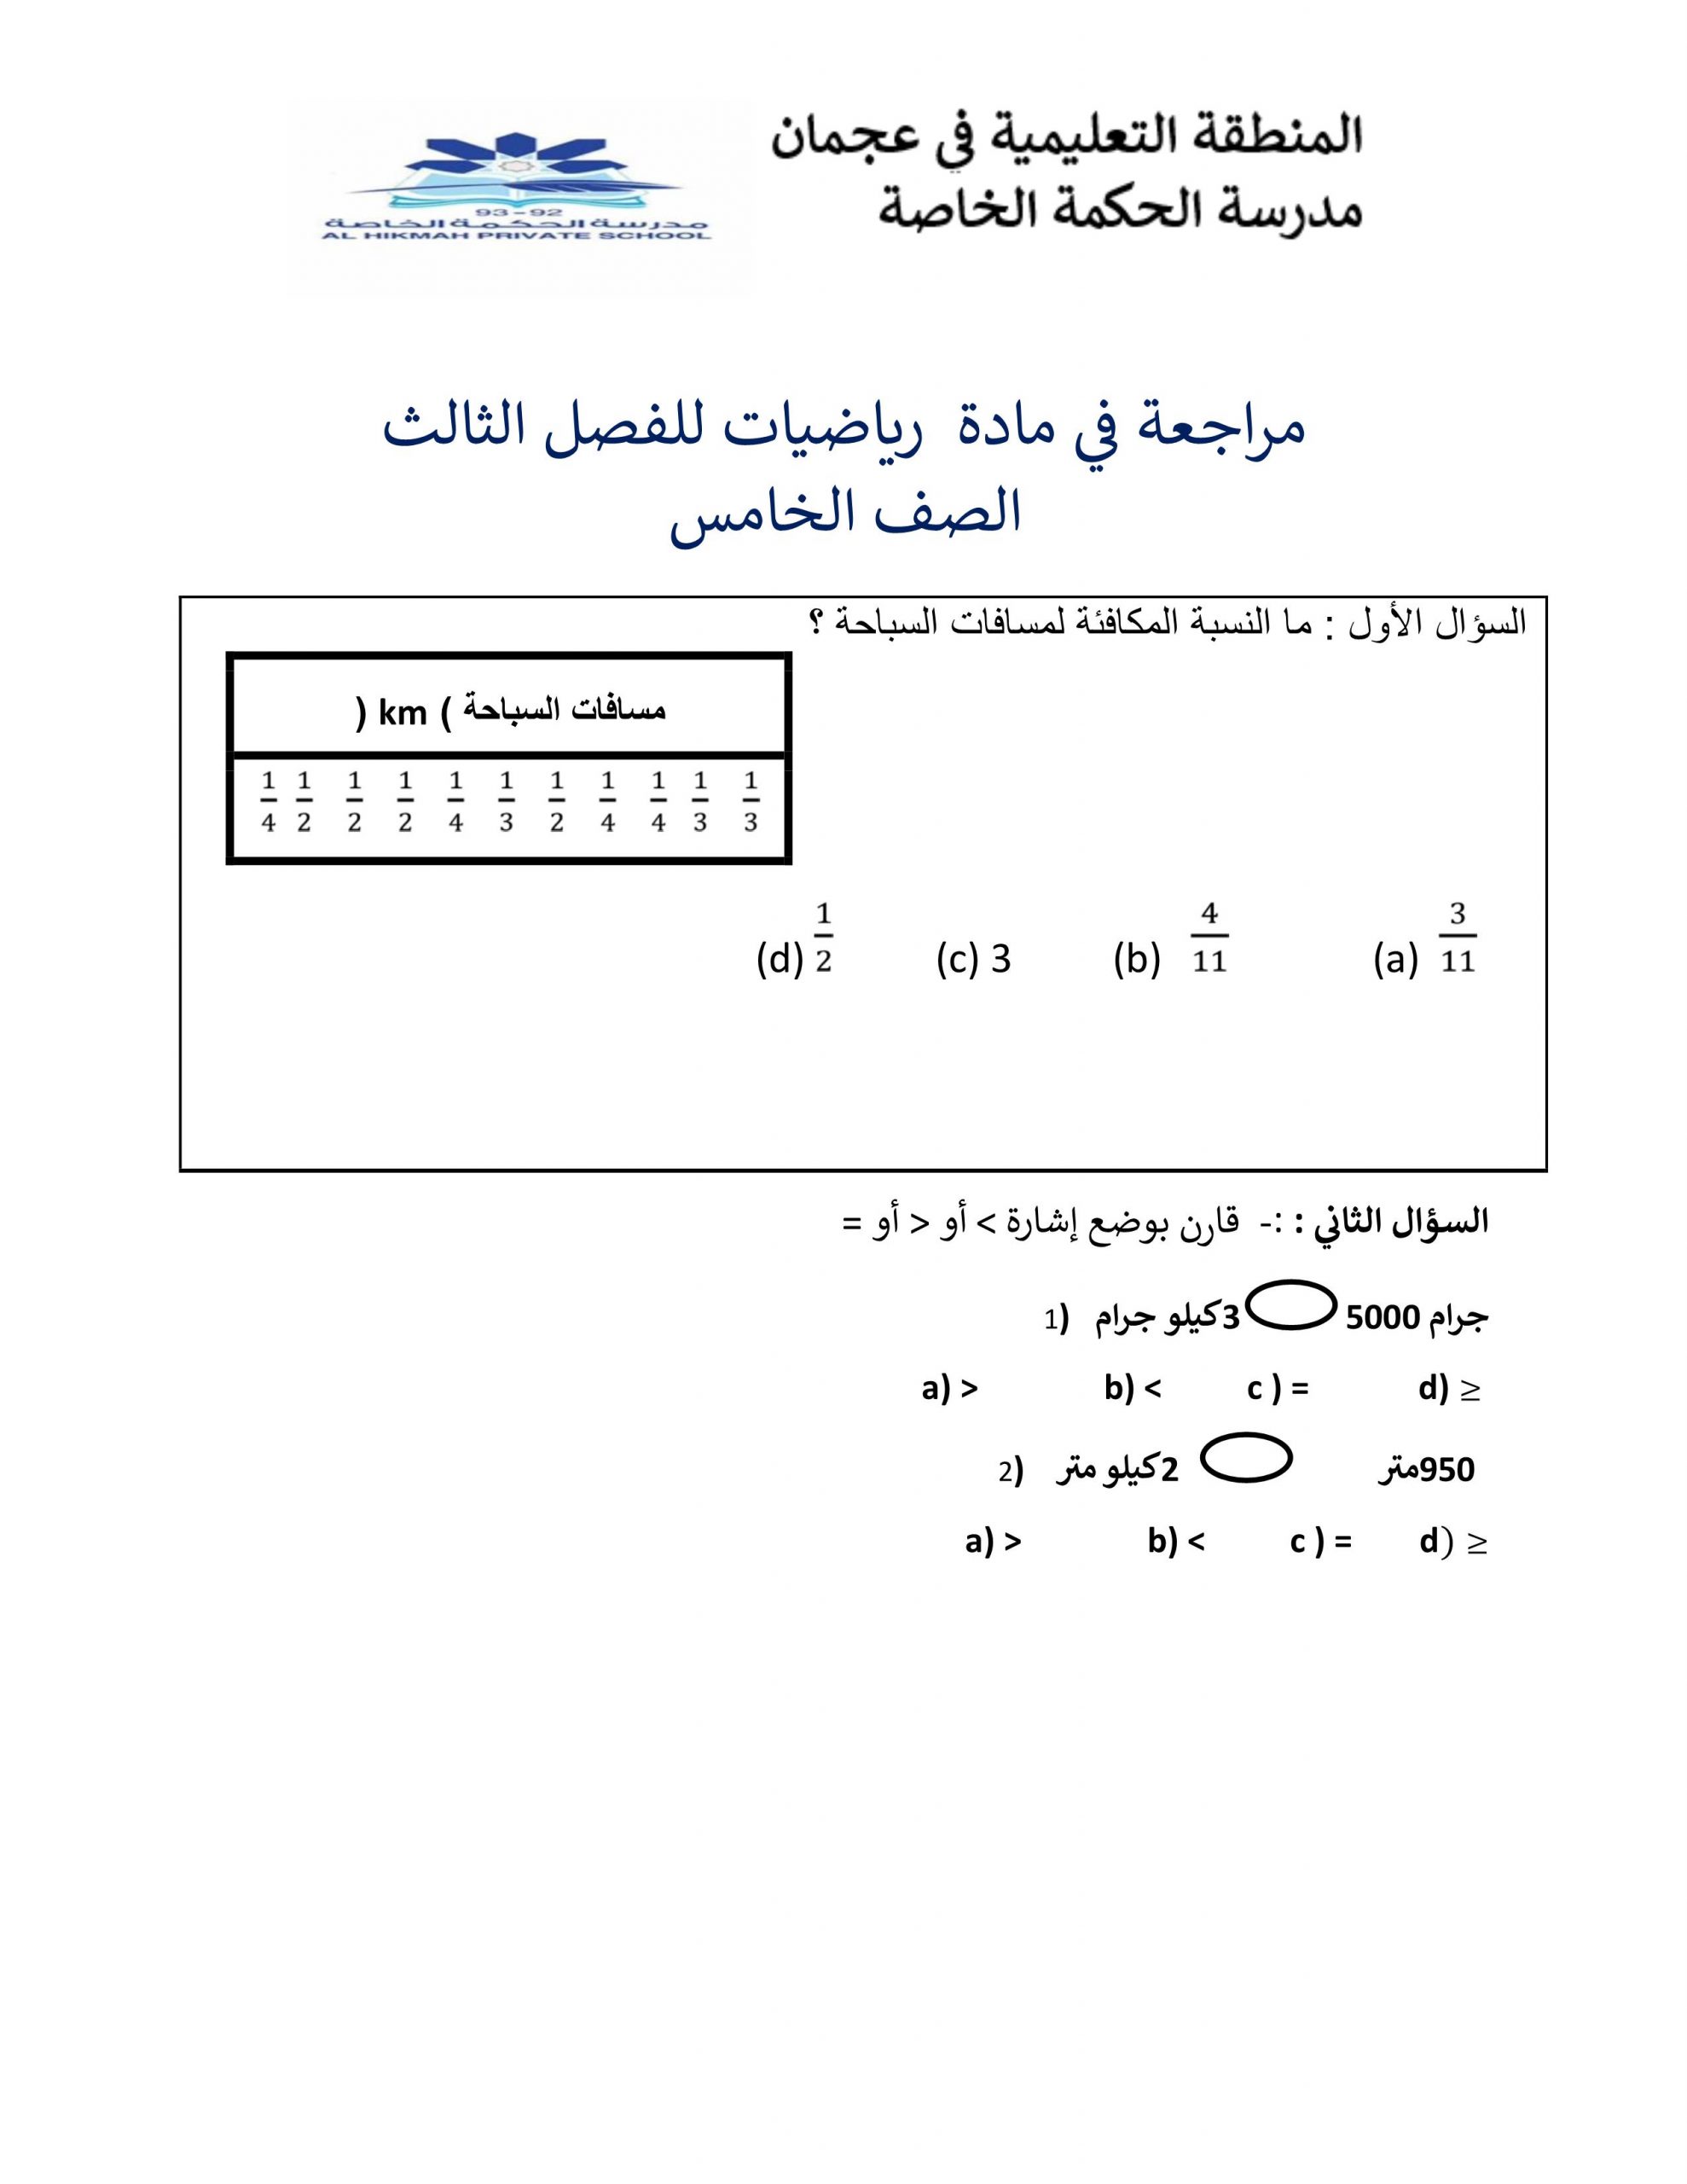 أوراق عمل مراجعة الفصل الدراسي الثالث الصف الخامس مادة الرياضيات المتكاملة 